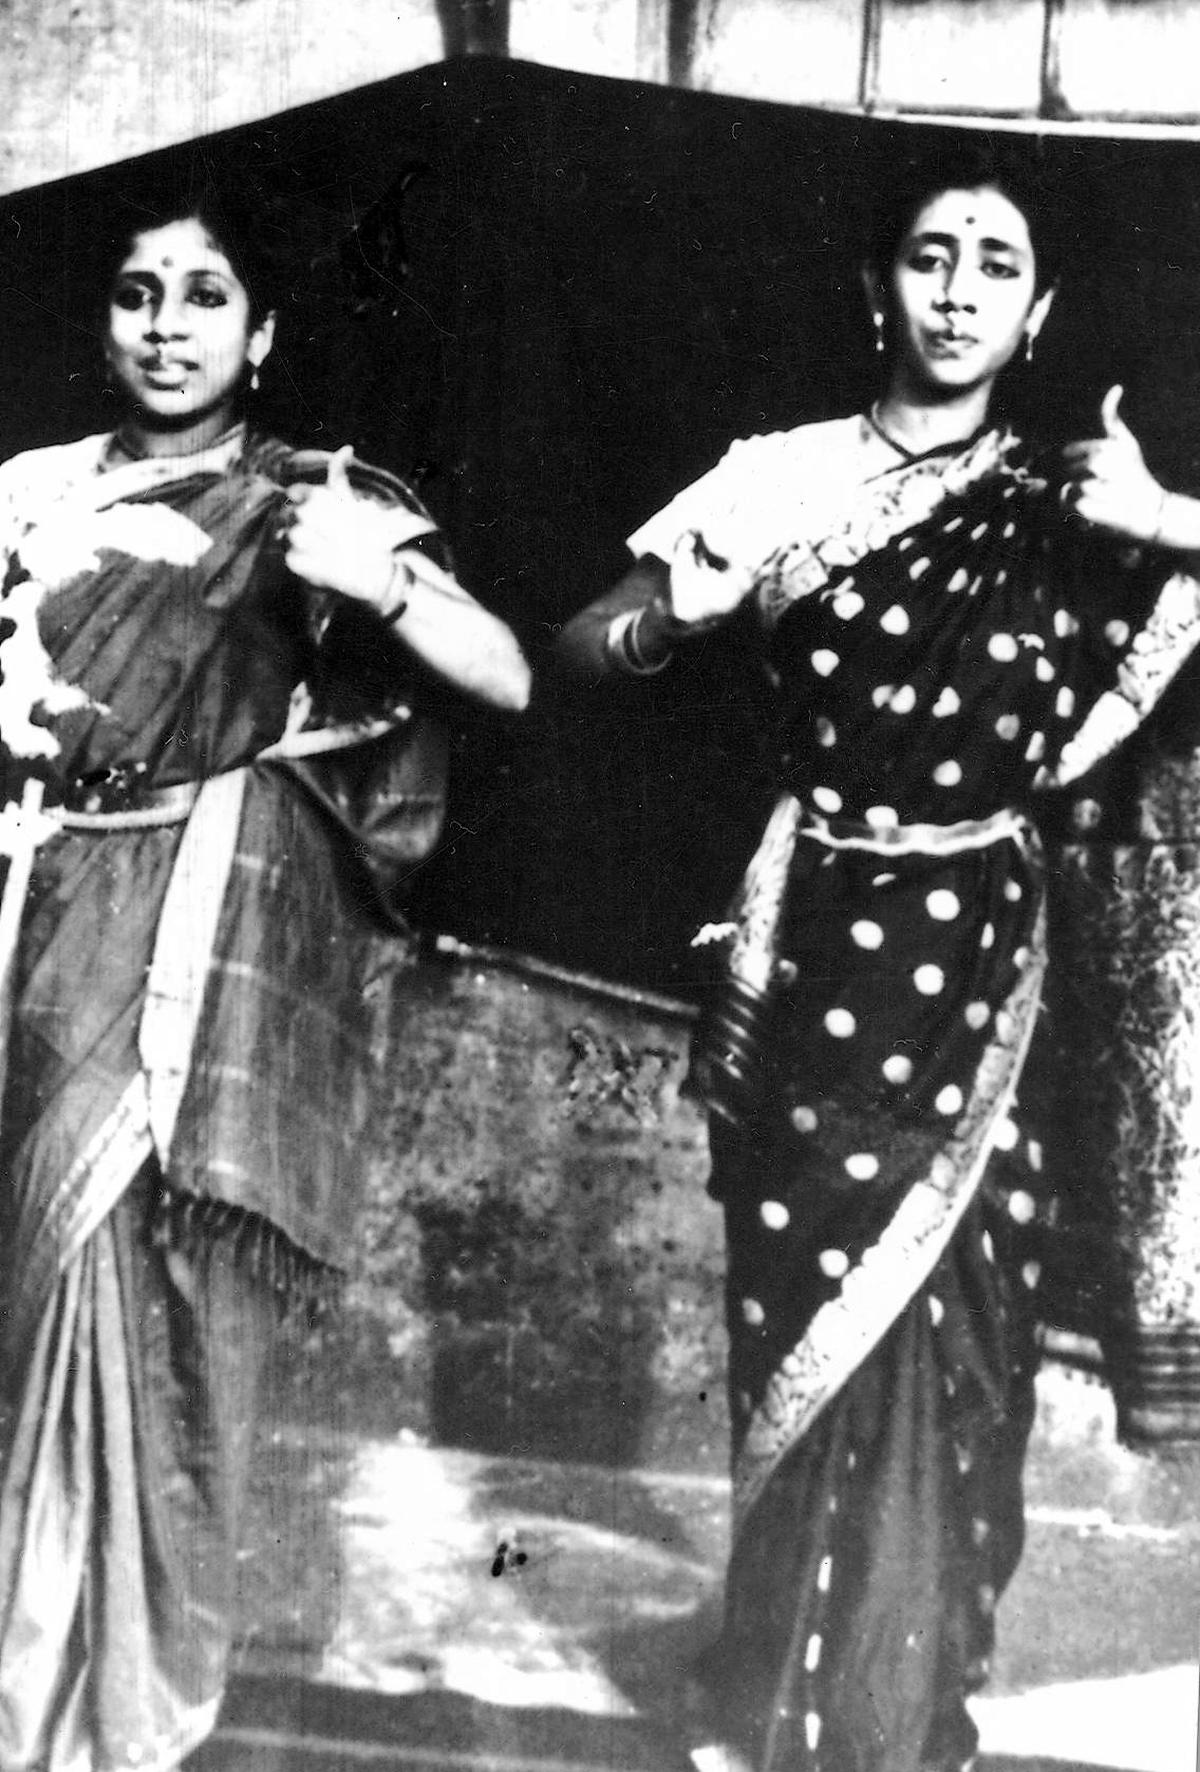 Kumbakonam Bhanumathi (left) and Varalakshmi were featured on December 27, 1936.